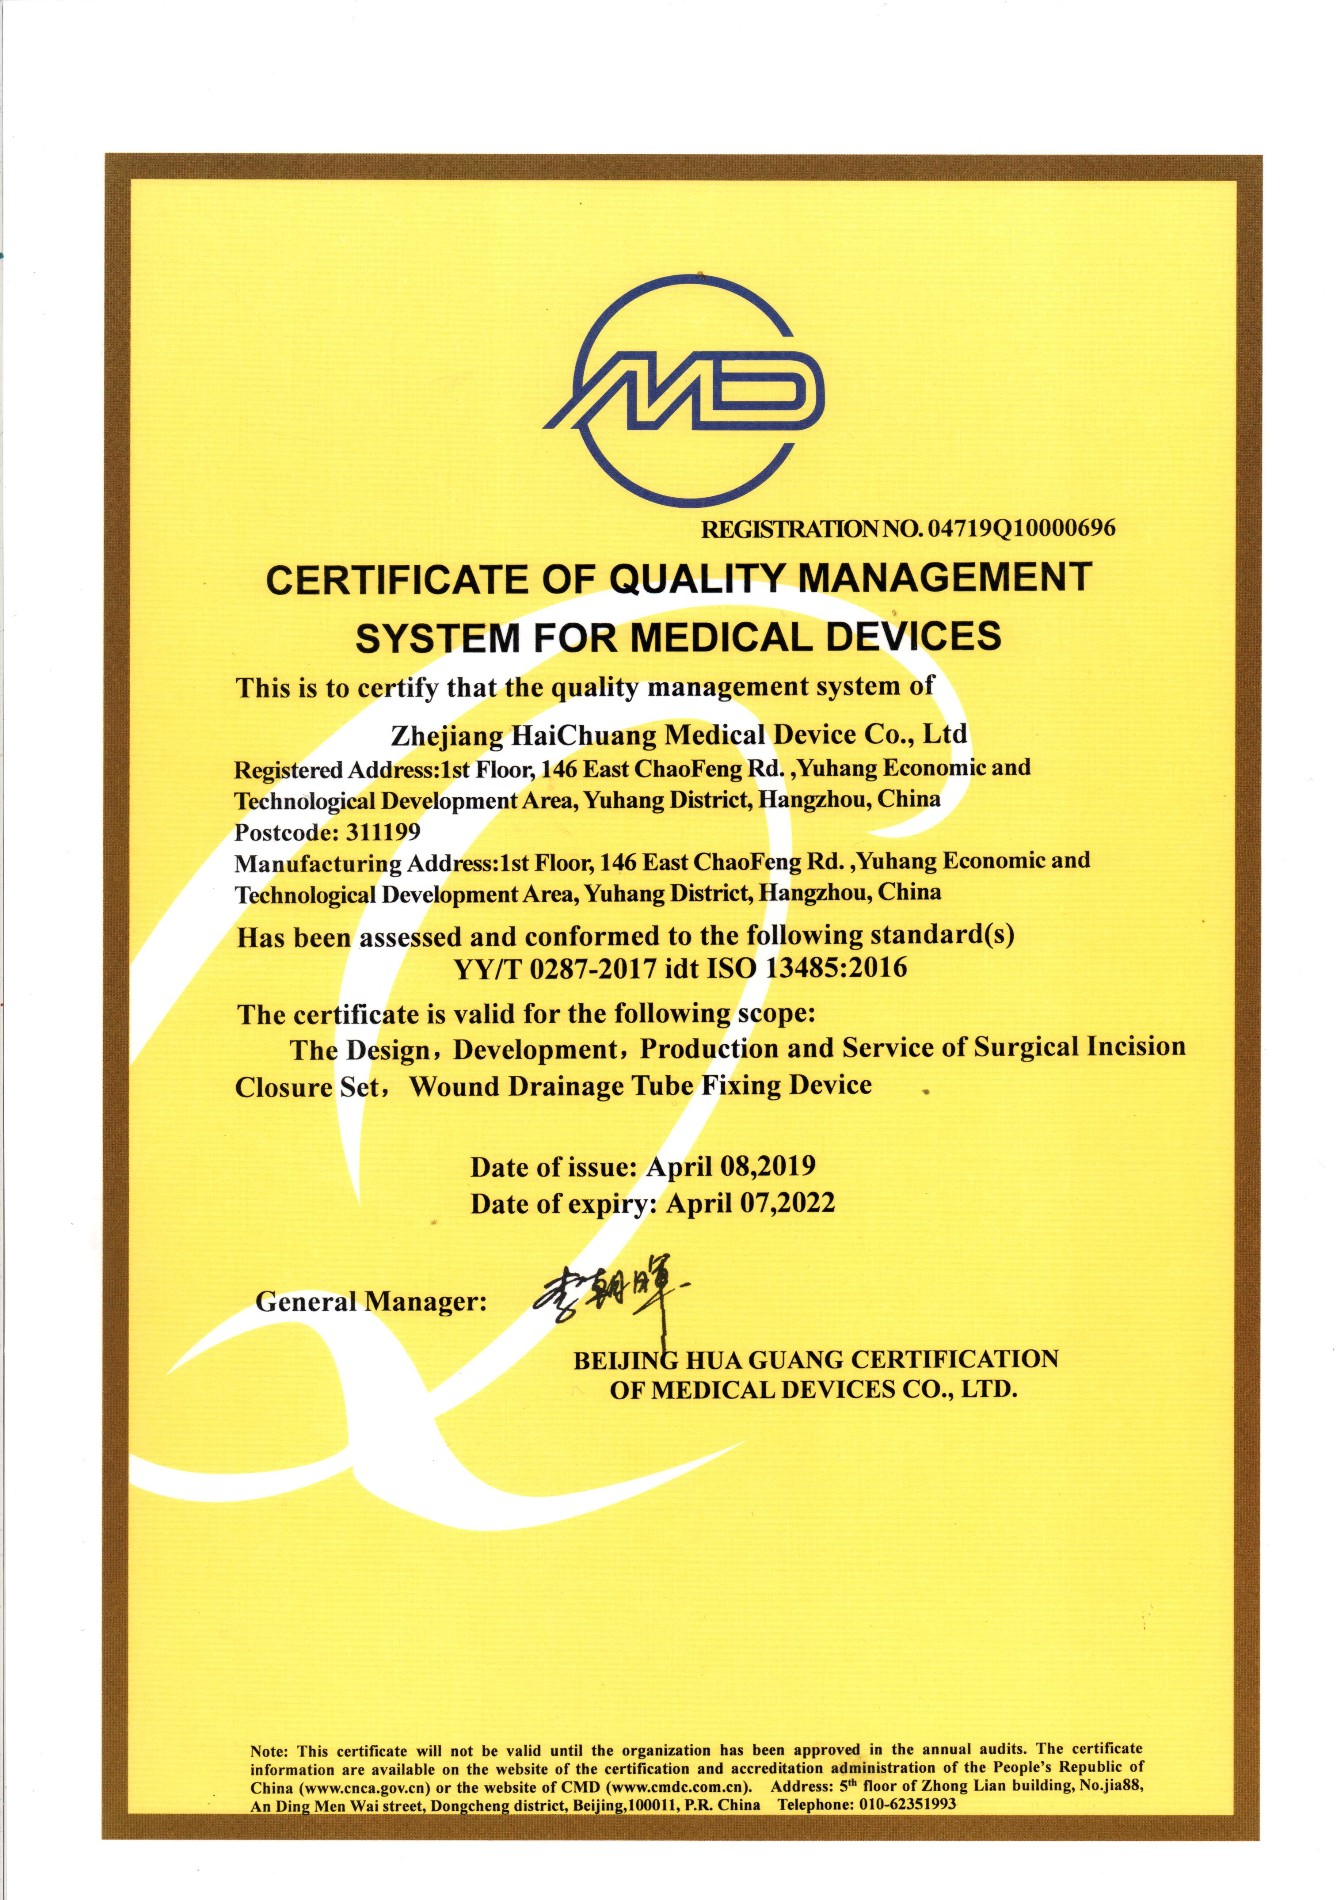 Сертификат системы менеджмента качества для медицинских приборов